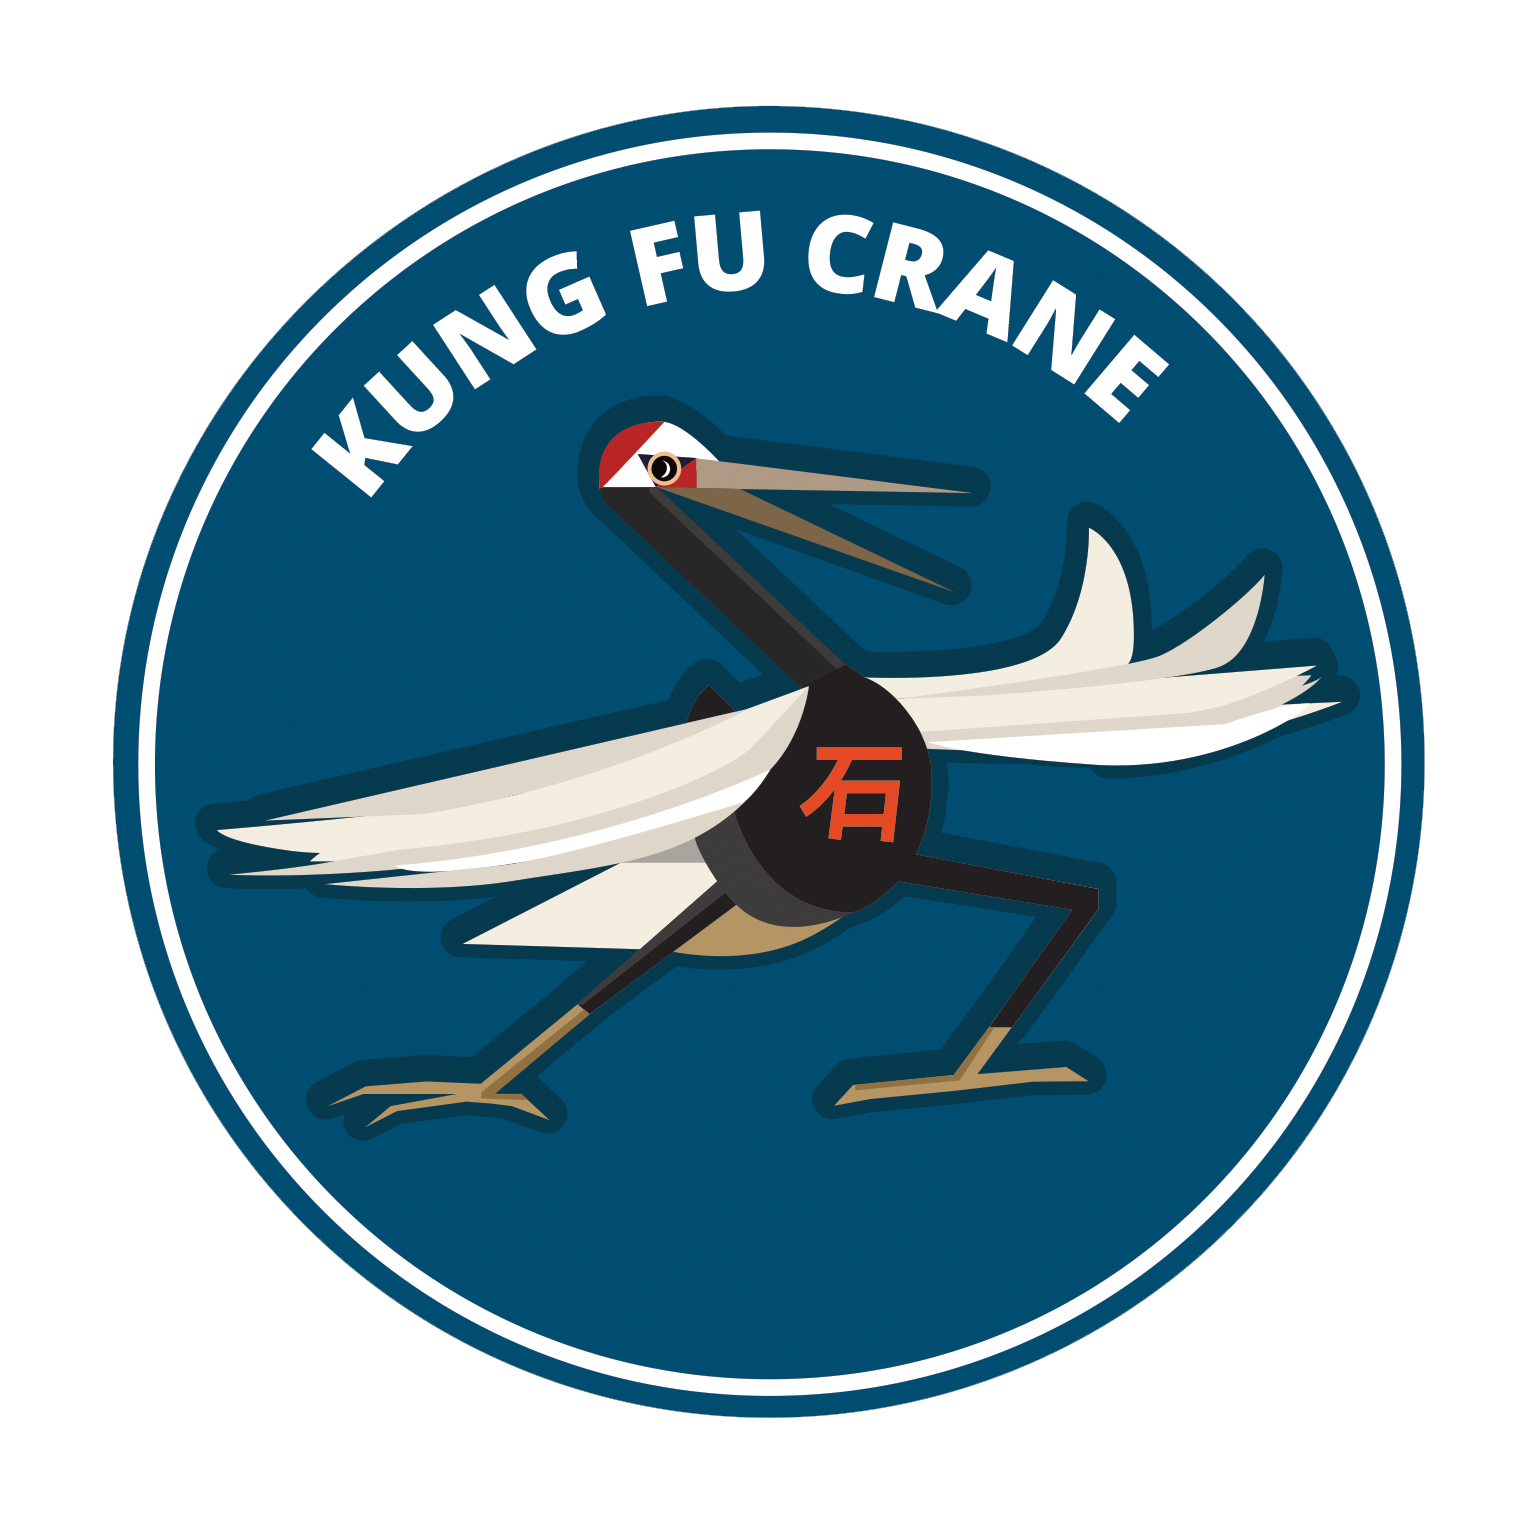 KEI Kung Fu Crane